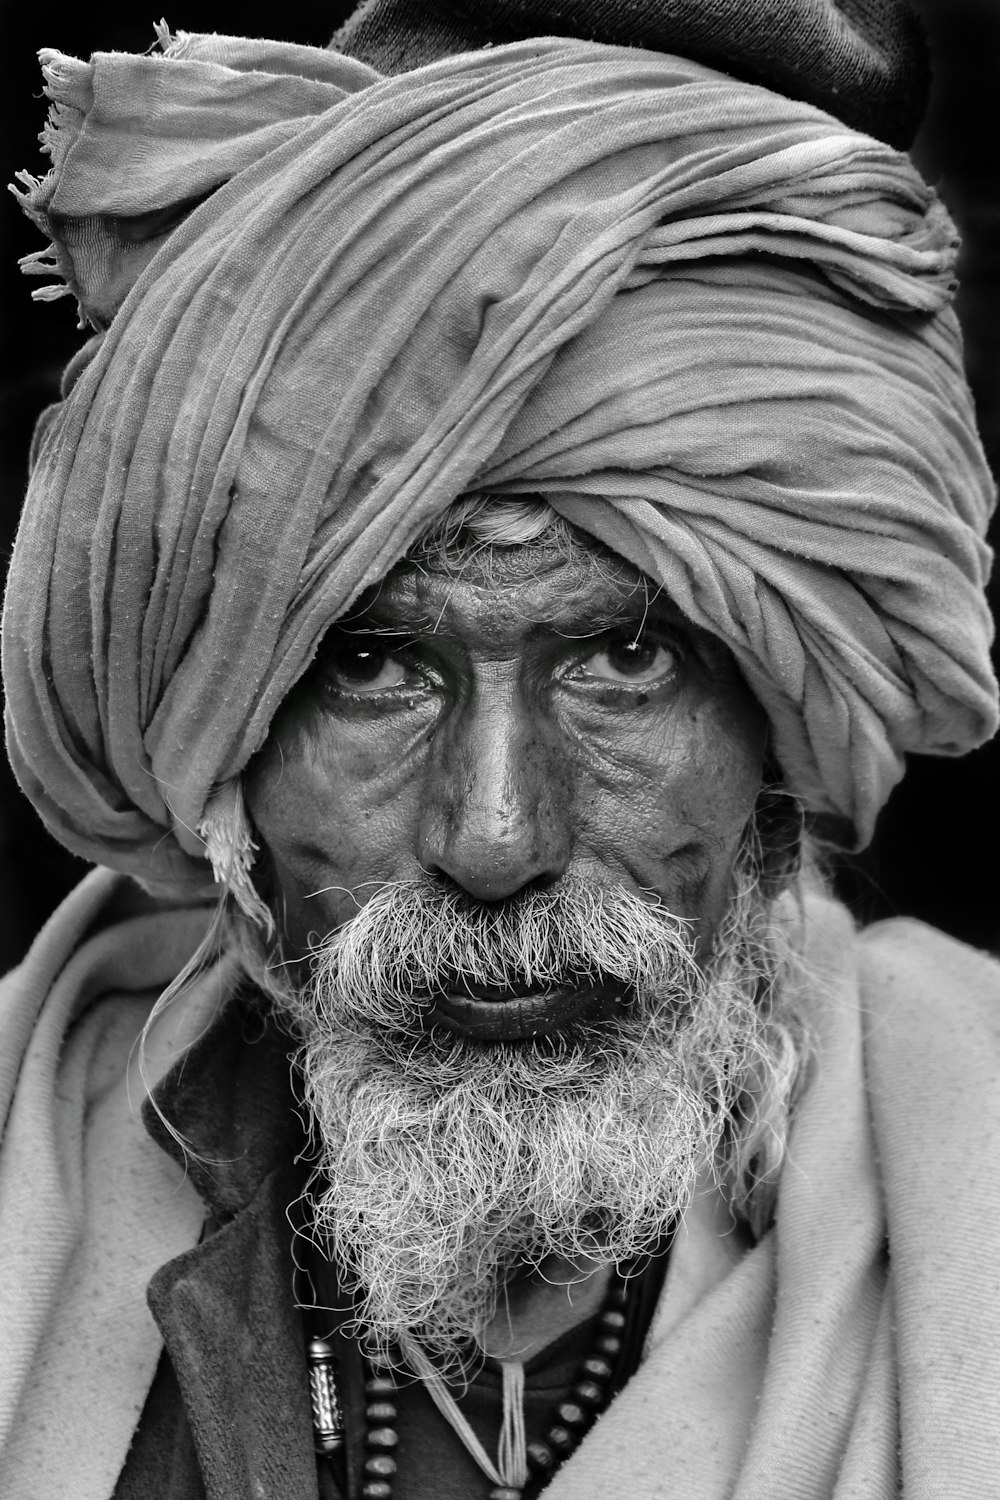 Una foto en blanco y negro de un hombre con turbante